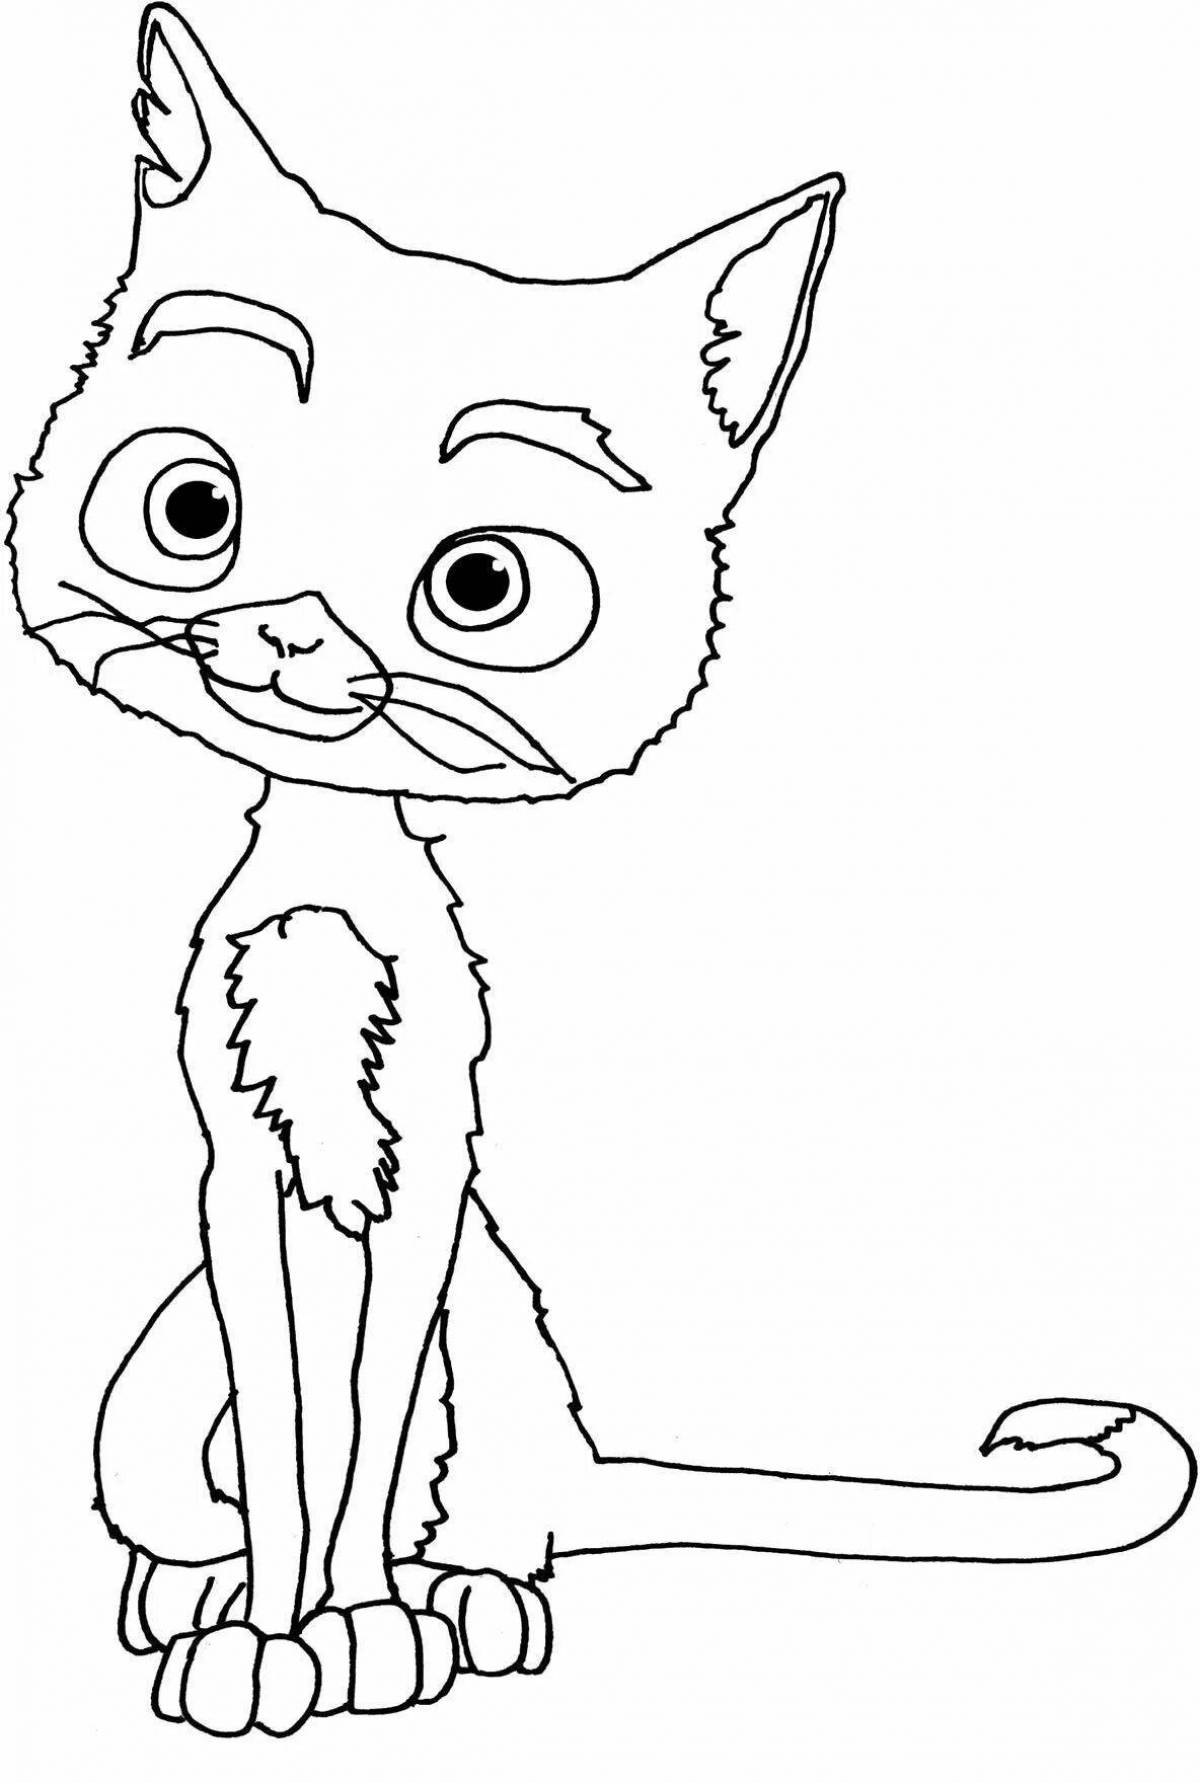 Playable cat cartoon coloring book